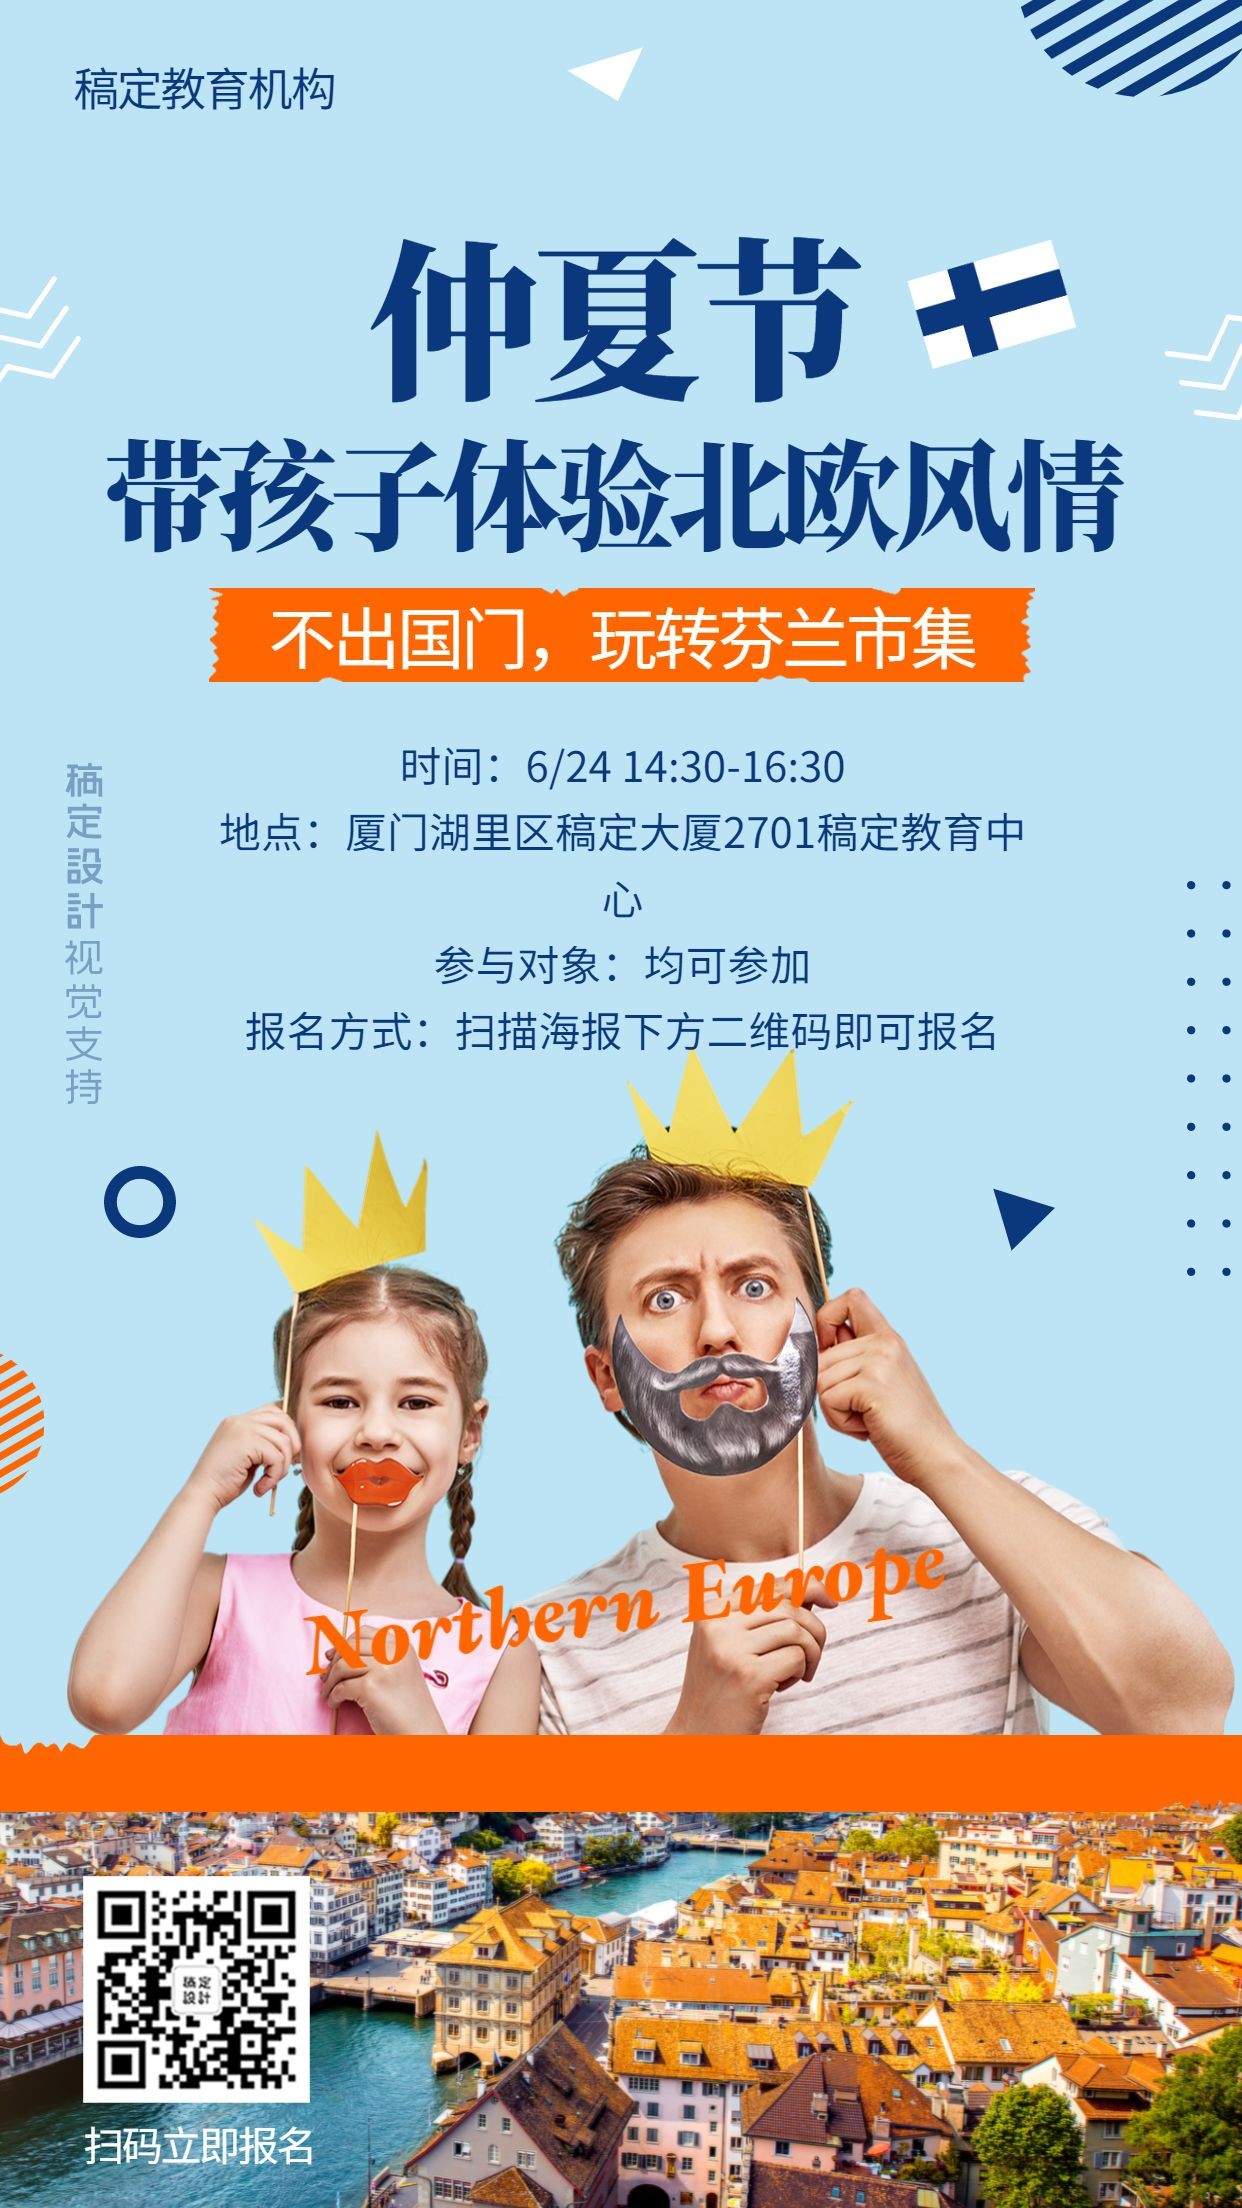 仲夏节英语教育机构活动宣传海报预览效果